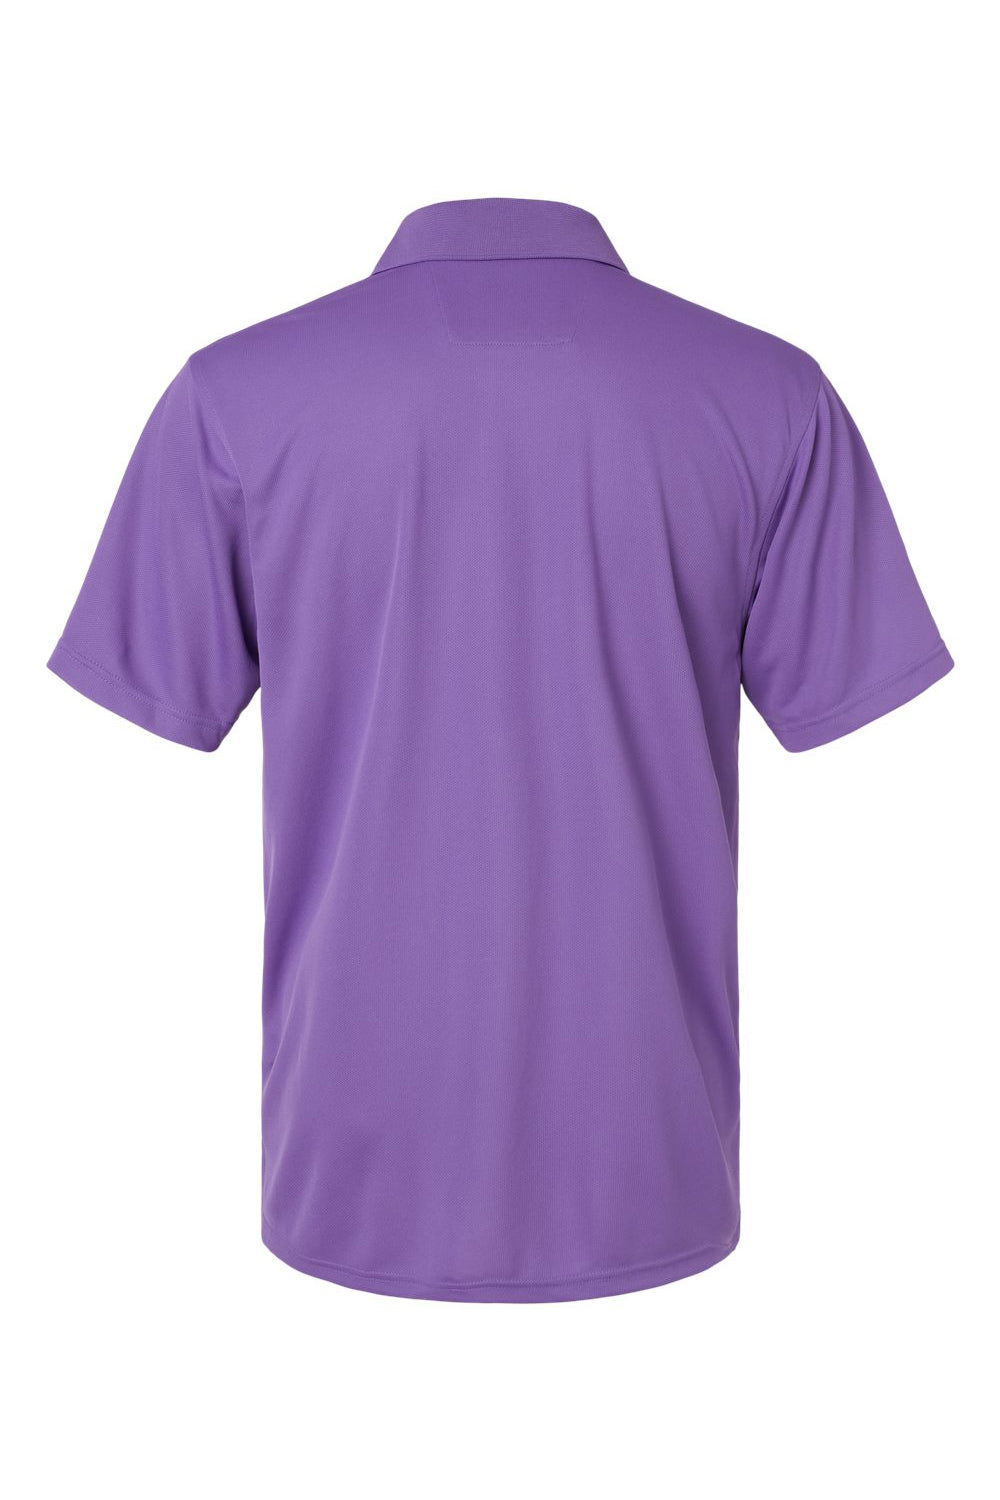 Paragon 100 Mens Saratoga Performance Mini Mesh Short Sleeve Polo Shirt Grape Purple Flat Back